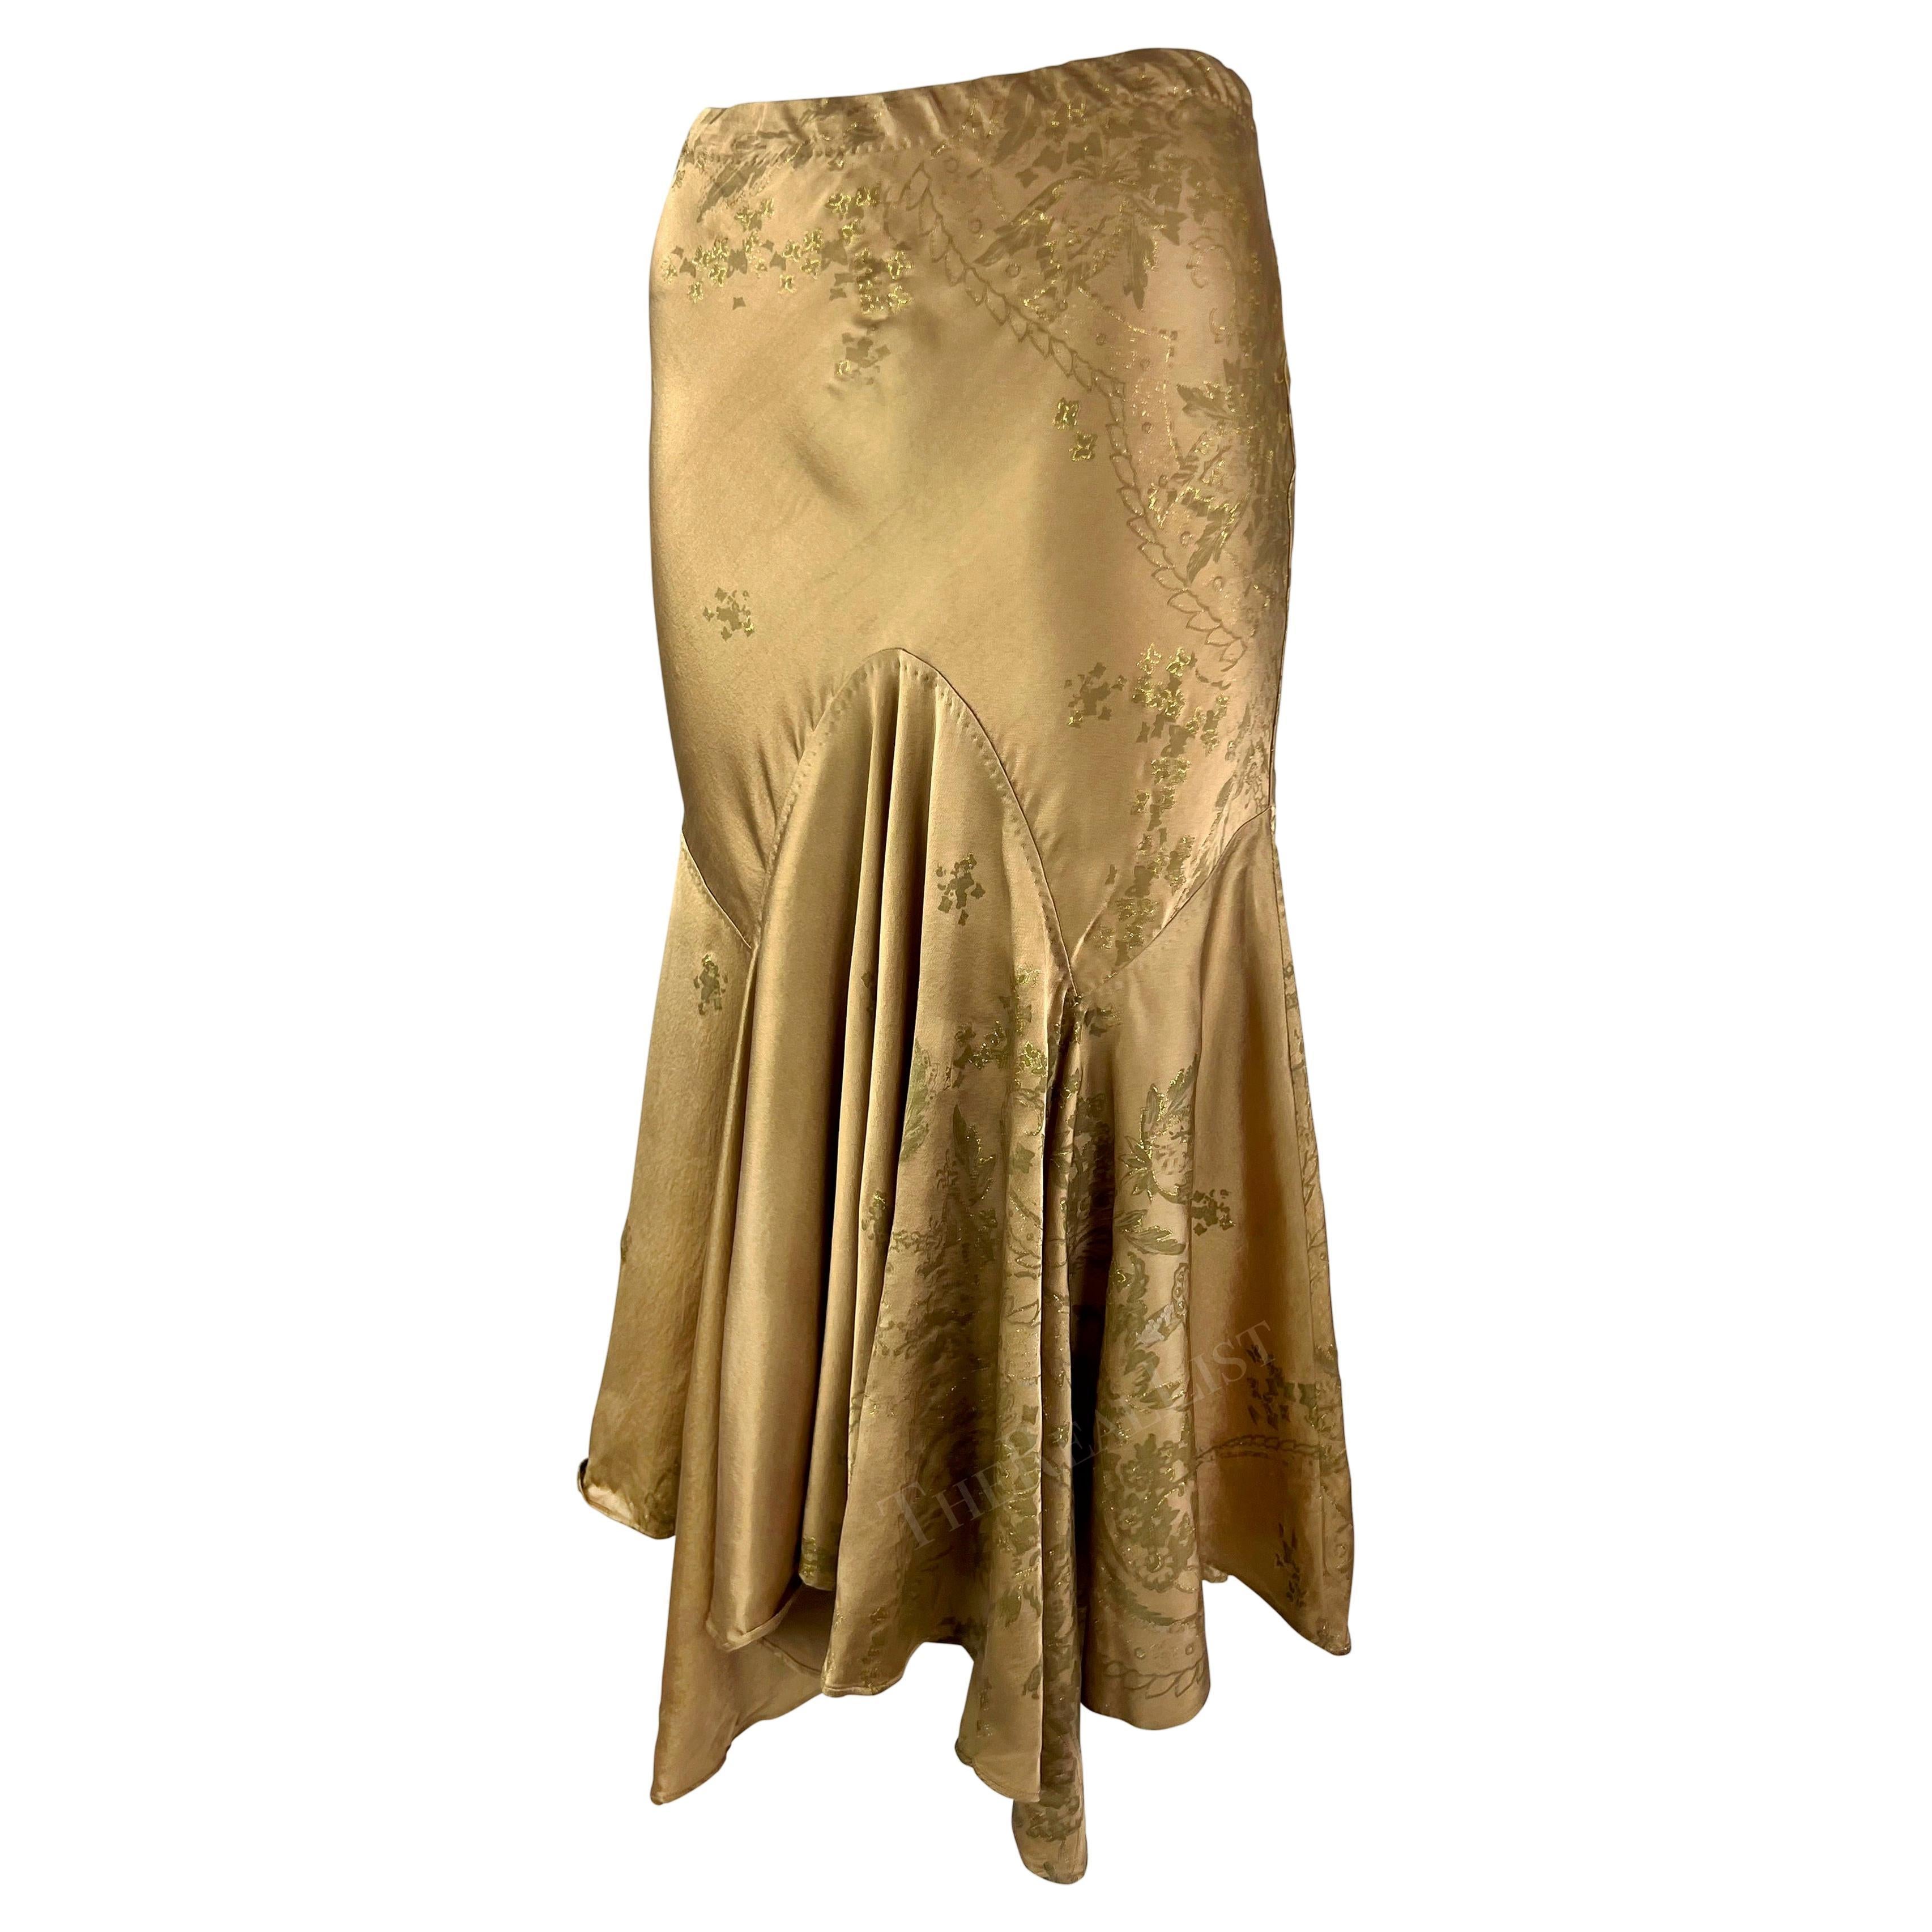 Voici une fabuleuse jupe de style mouchoir en soie dorée de Roberto Cavalli, issue de la collection printemps-été 2005. Cette jupe scintillante aux tons dorés est entièrement réalisée en soie luxueuse. La jupe au genou est recouverte d'un motif